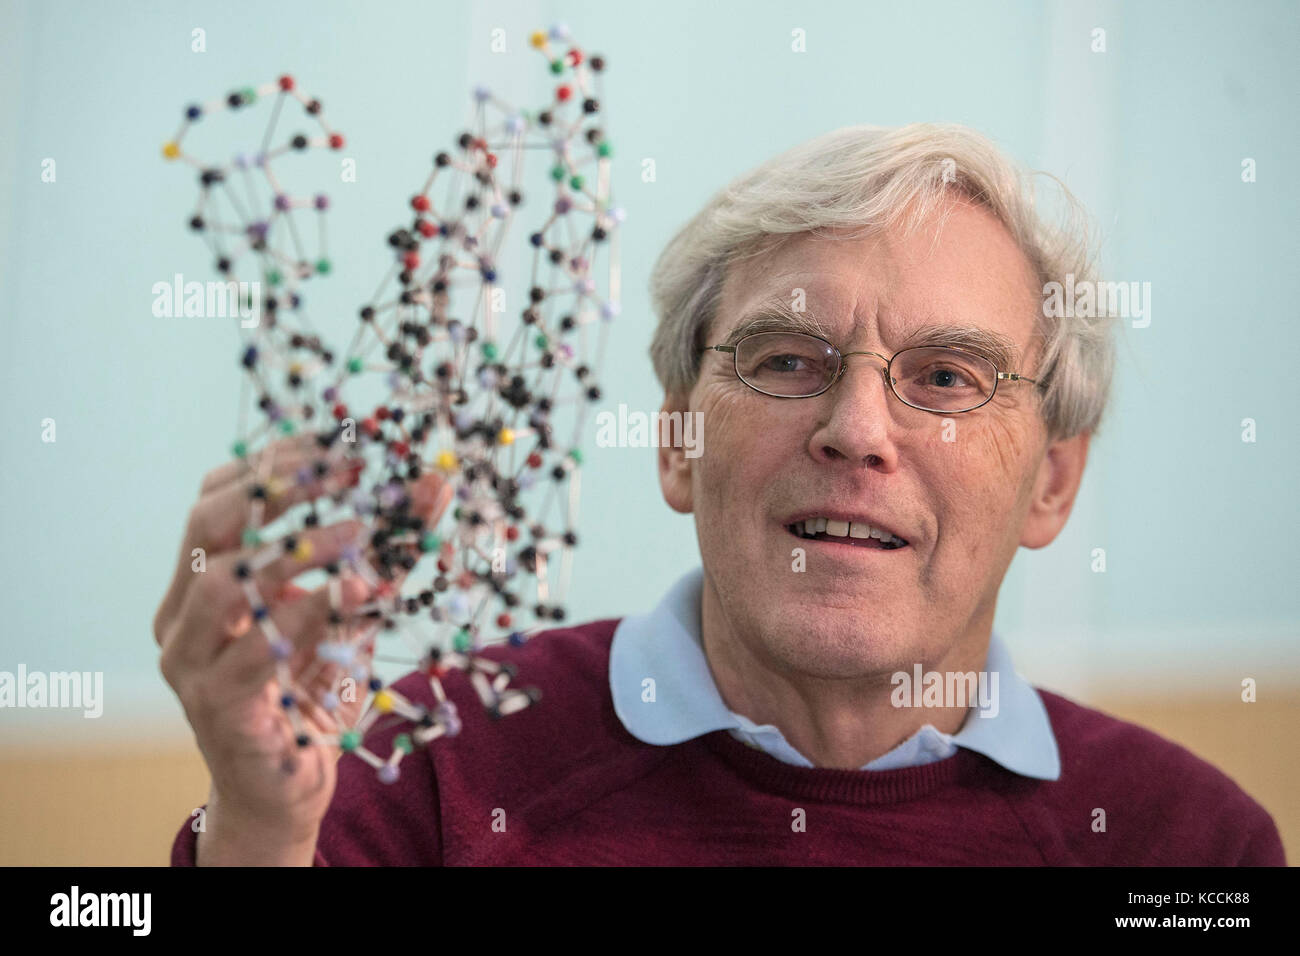 Richard Henderson, que es uno de los tres científicos que han compartido el Premio Nobel de Química 2017 por mejorar las imágenes hechas de moléculas biológicas, mira un modelo de bacteriorhodopsina, mientras habla en el Laboratorio de Biología Molecular de Cambridge, donde trabaja. Foto de stock